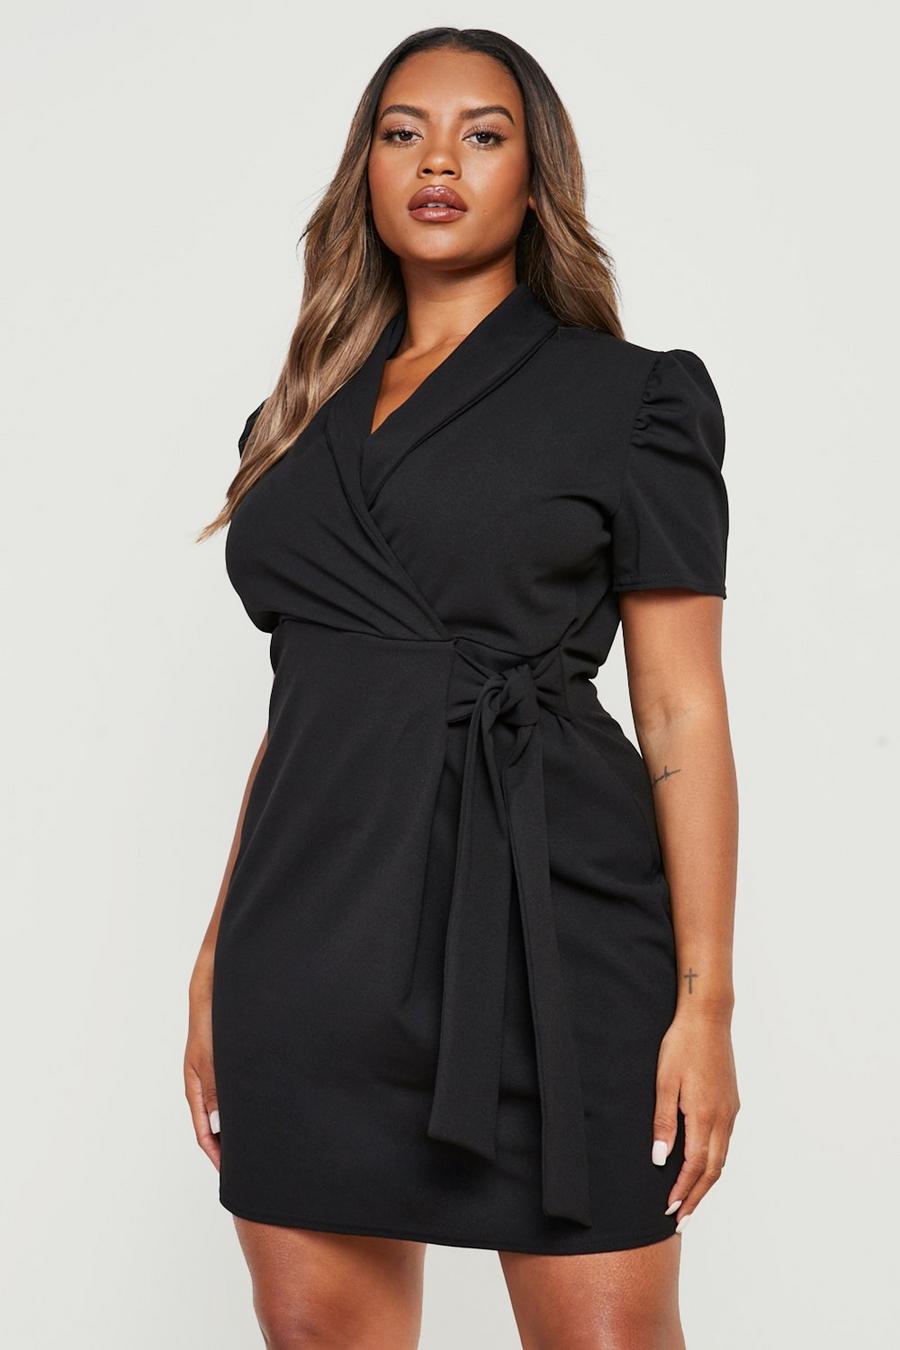 Black שמלת חולצה עם שרוולים תפוחים וחגורה, מידות גדולות